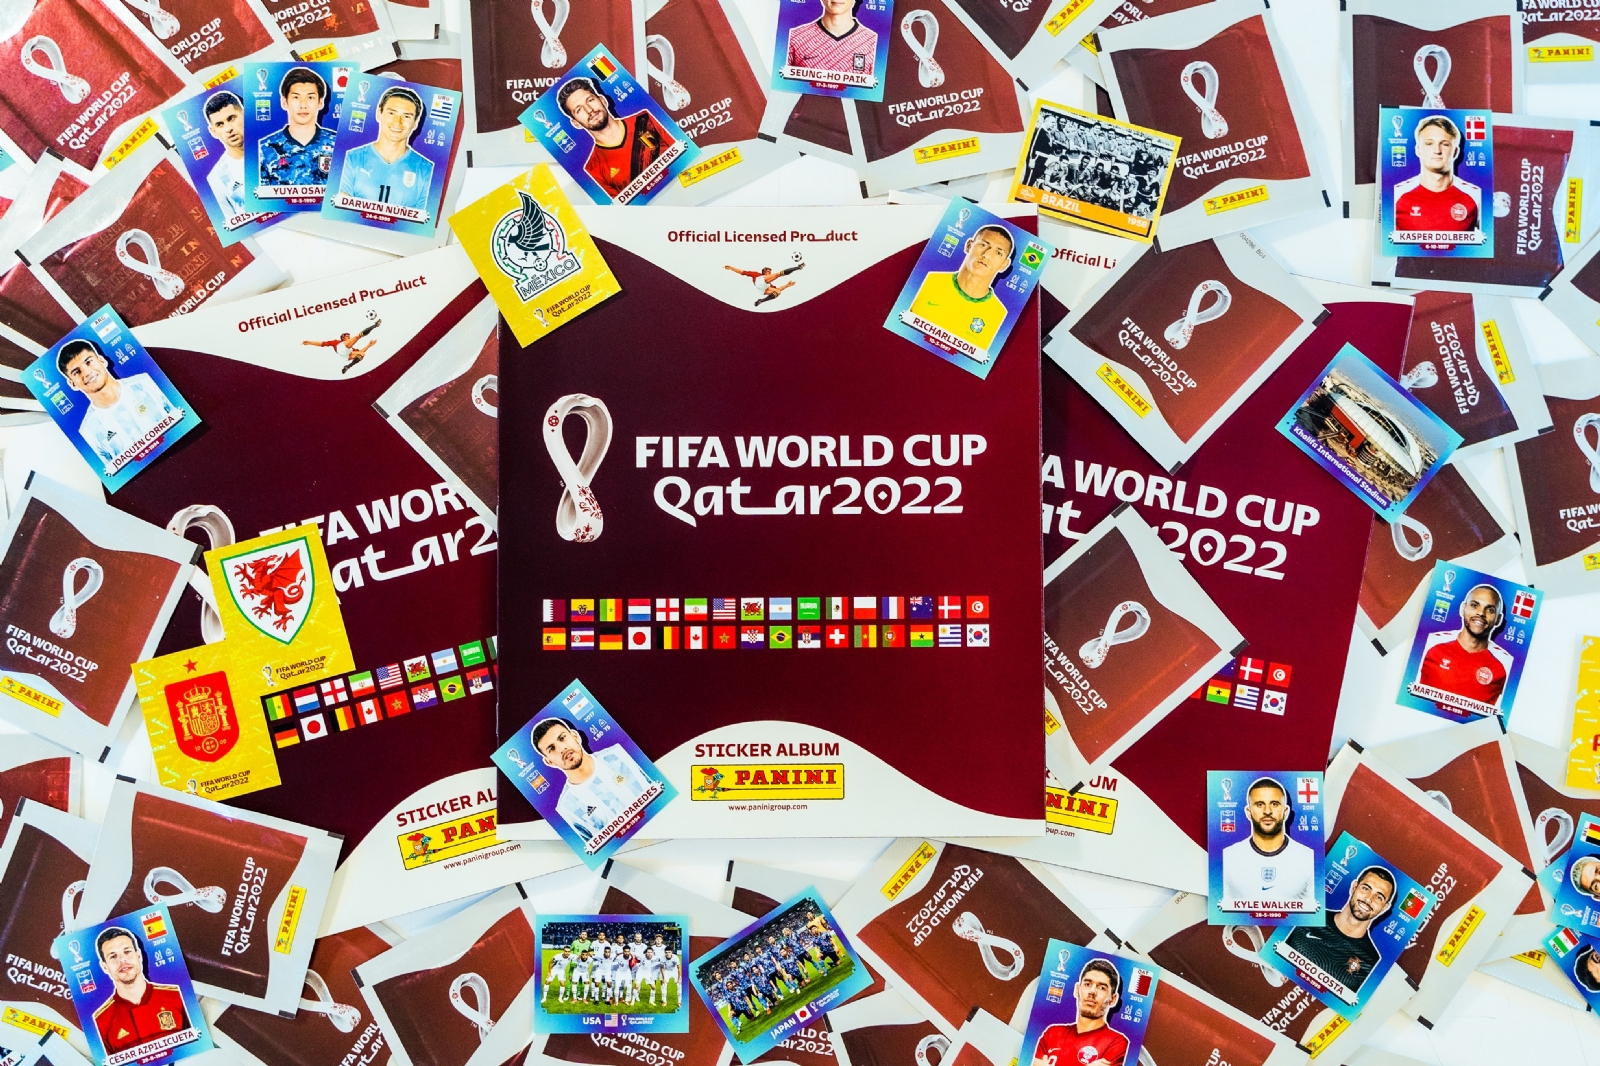 El álbum de estampas del Mundial de Qatar 2022 saldrá a la venta mañana